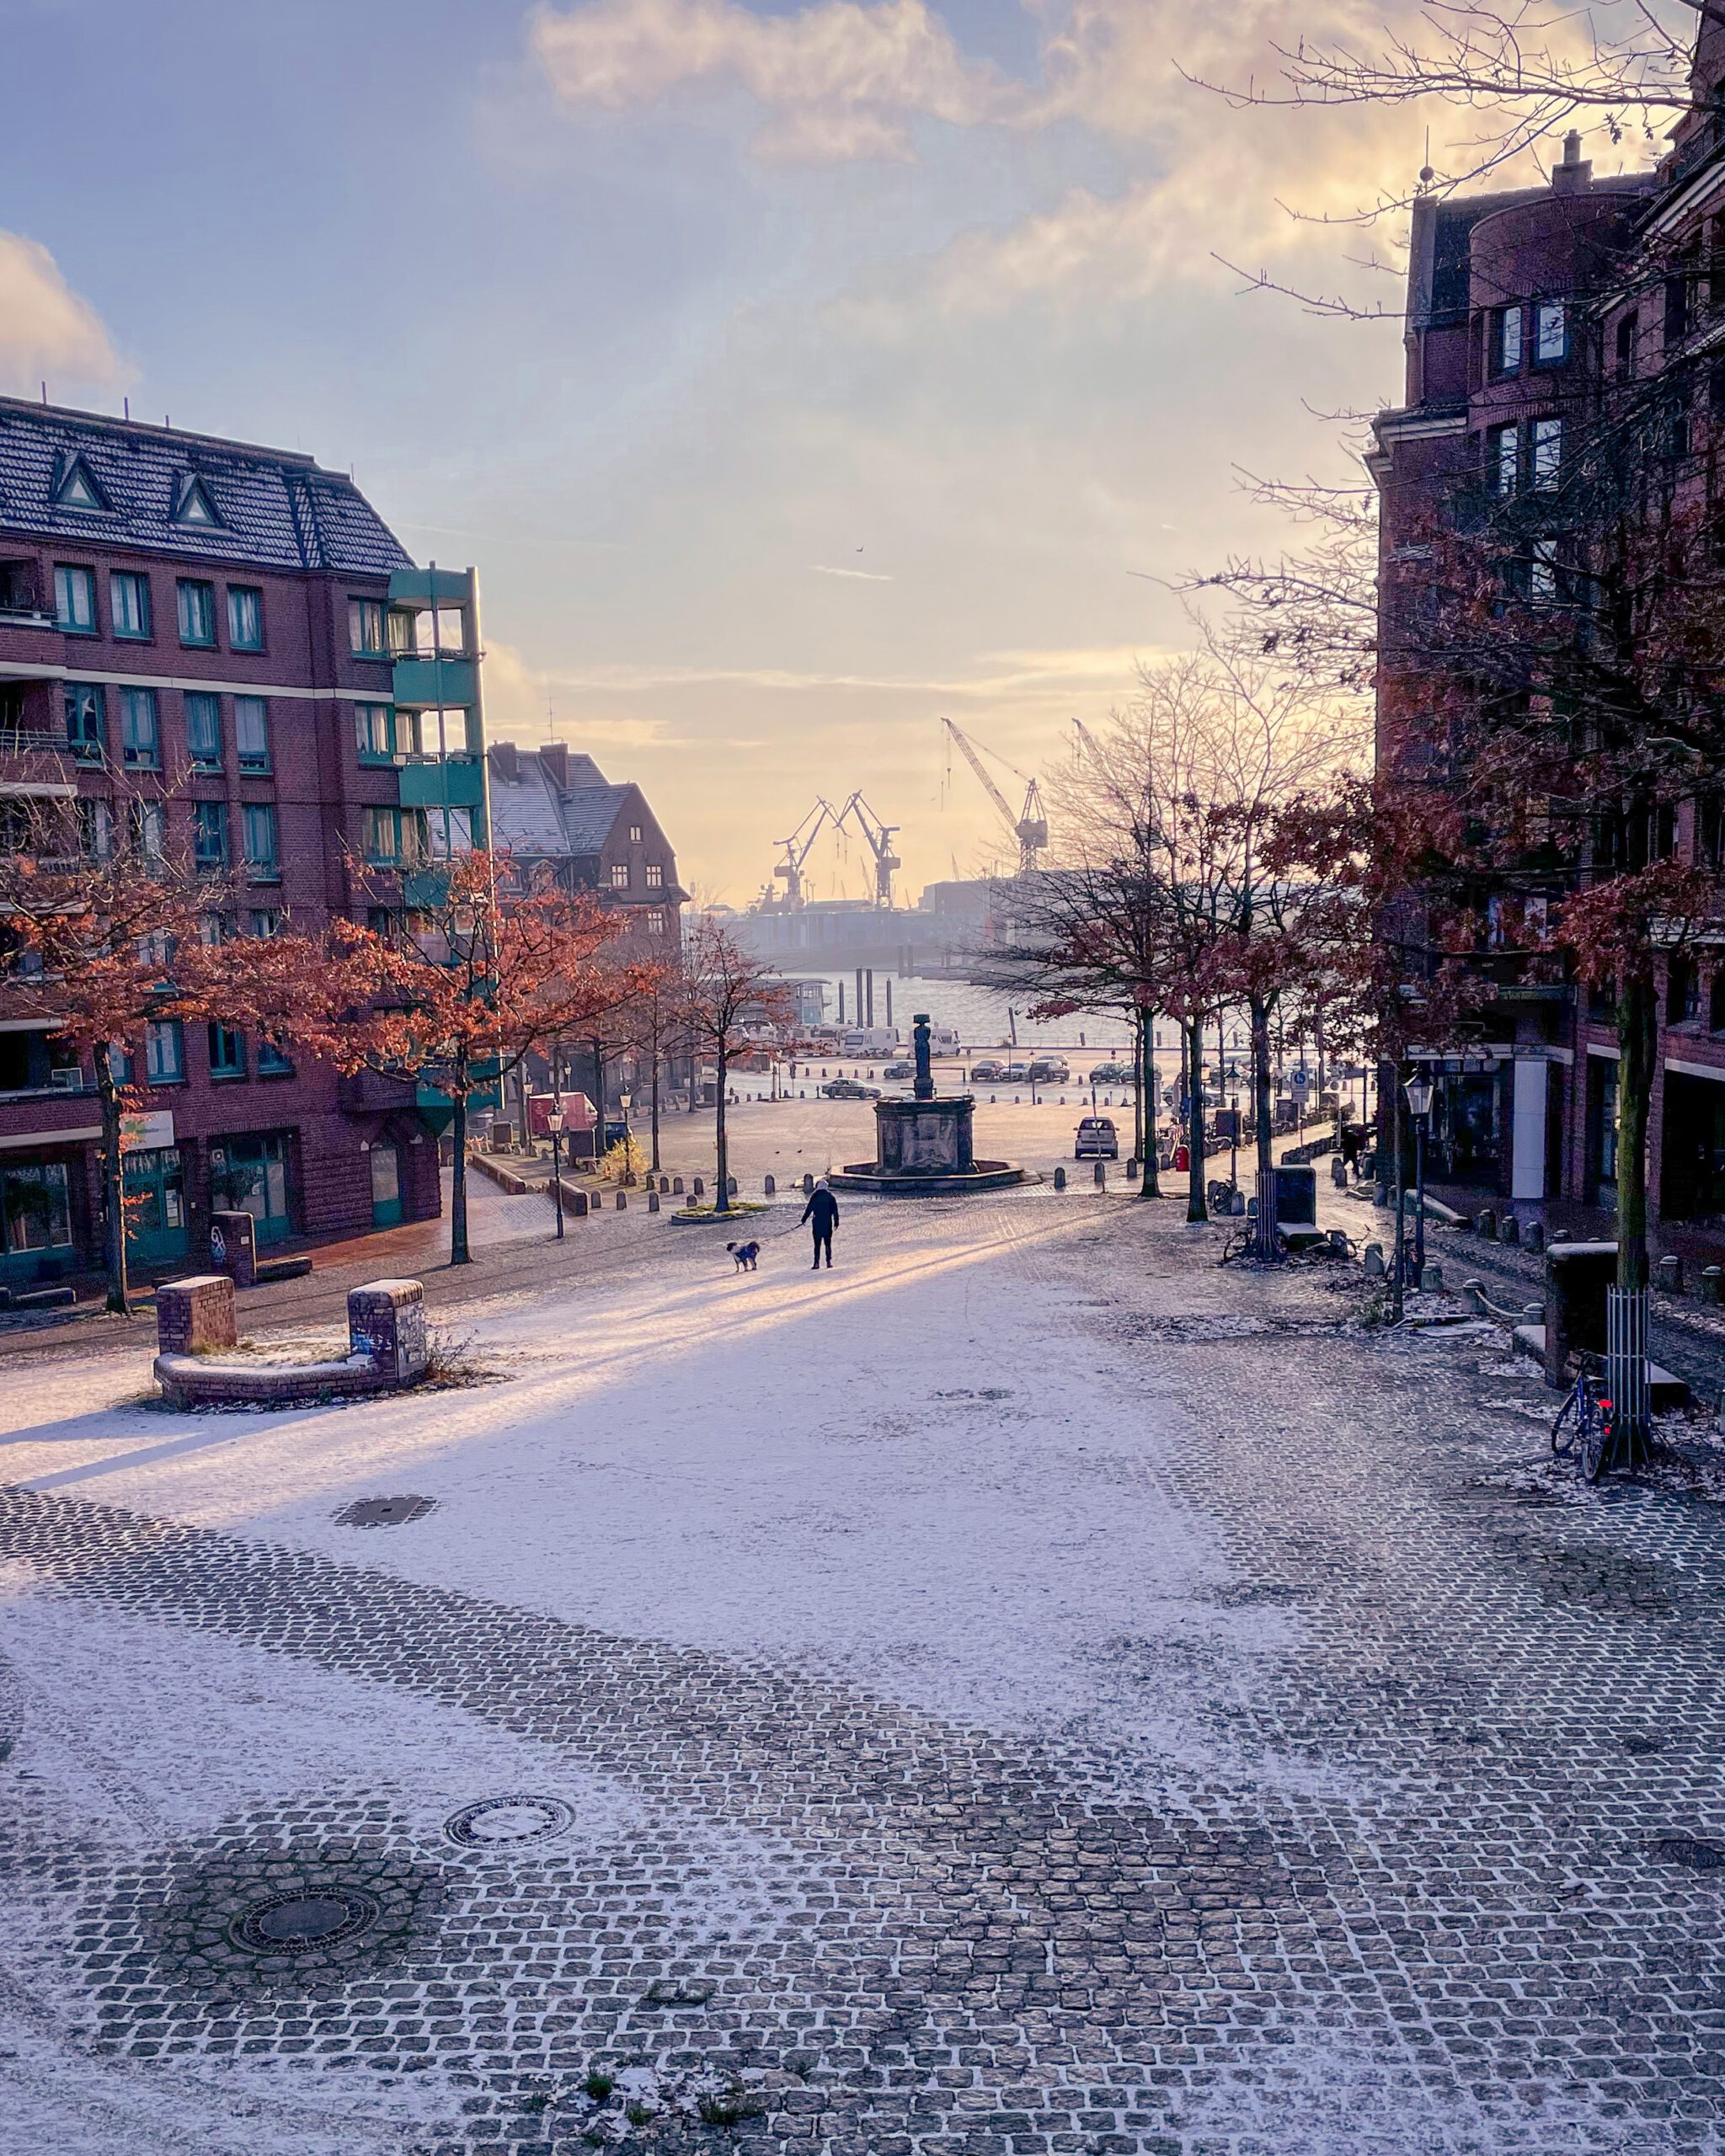 Fototipps für Hamburg im Winter am Fischmarkt